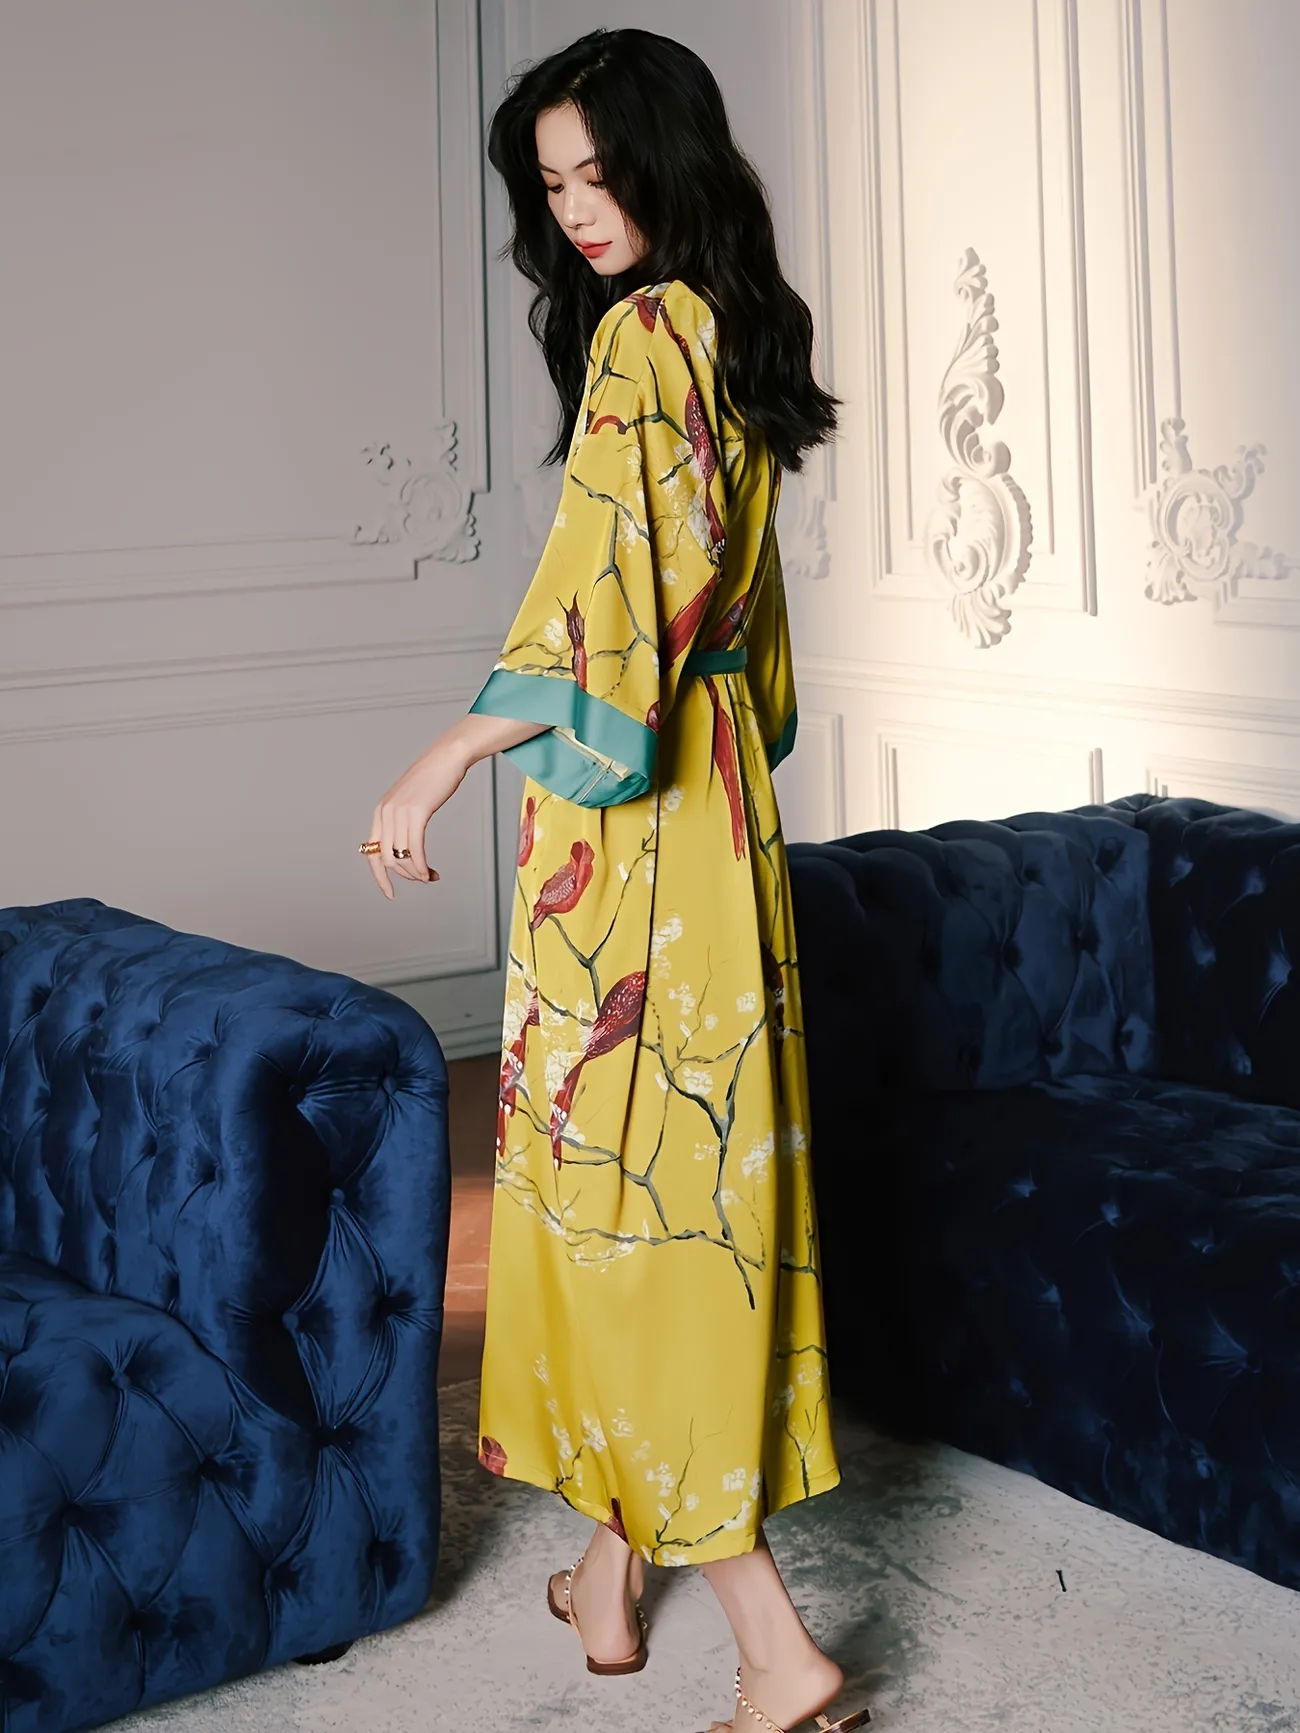 Minifaceminigirl Kimono Robes for Women Long Satin Robe Floral Silk Robes  Kimonos Bathrobe Dressing Gown, One Size 